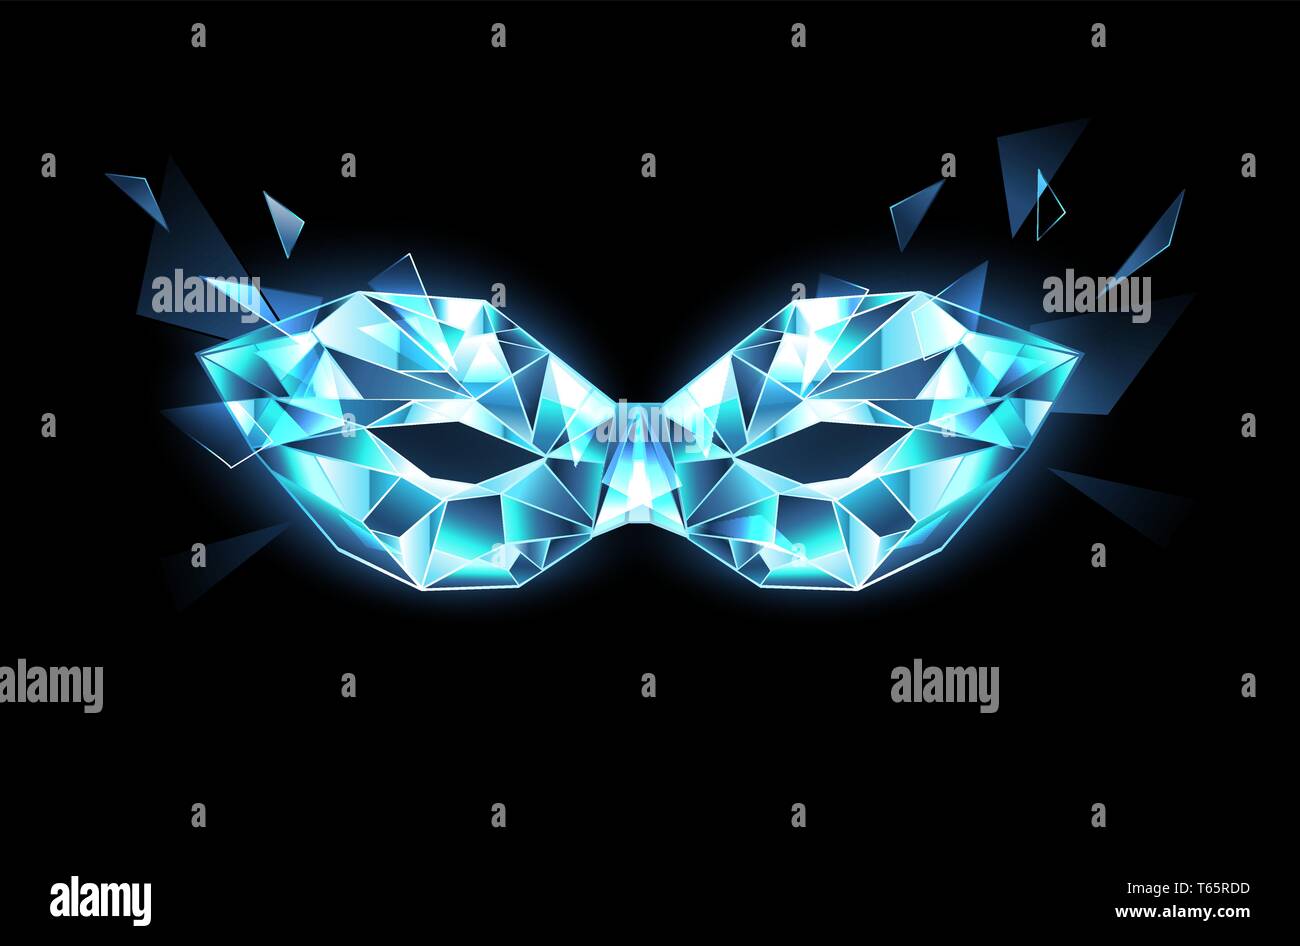 Polygonale Maske in Blau, transparent, glitzernden Eis auf schwarzen Hintergrund. Stock Vektor